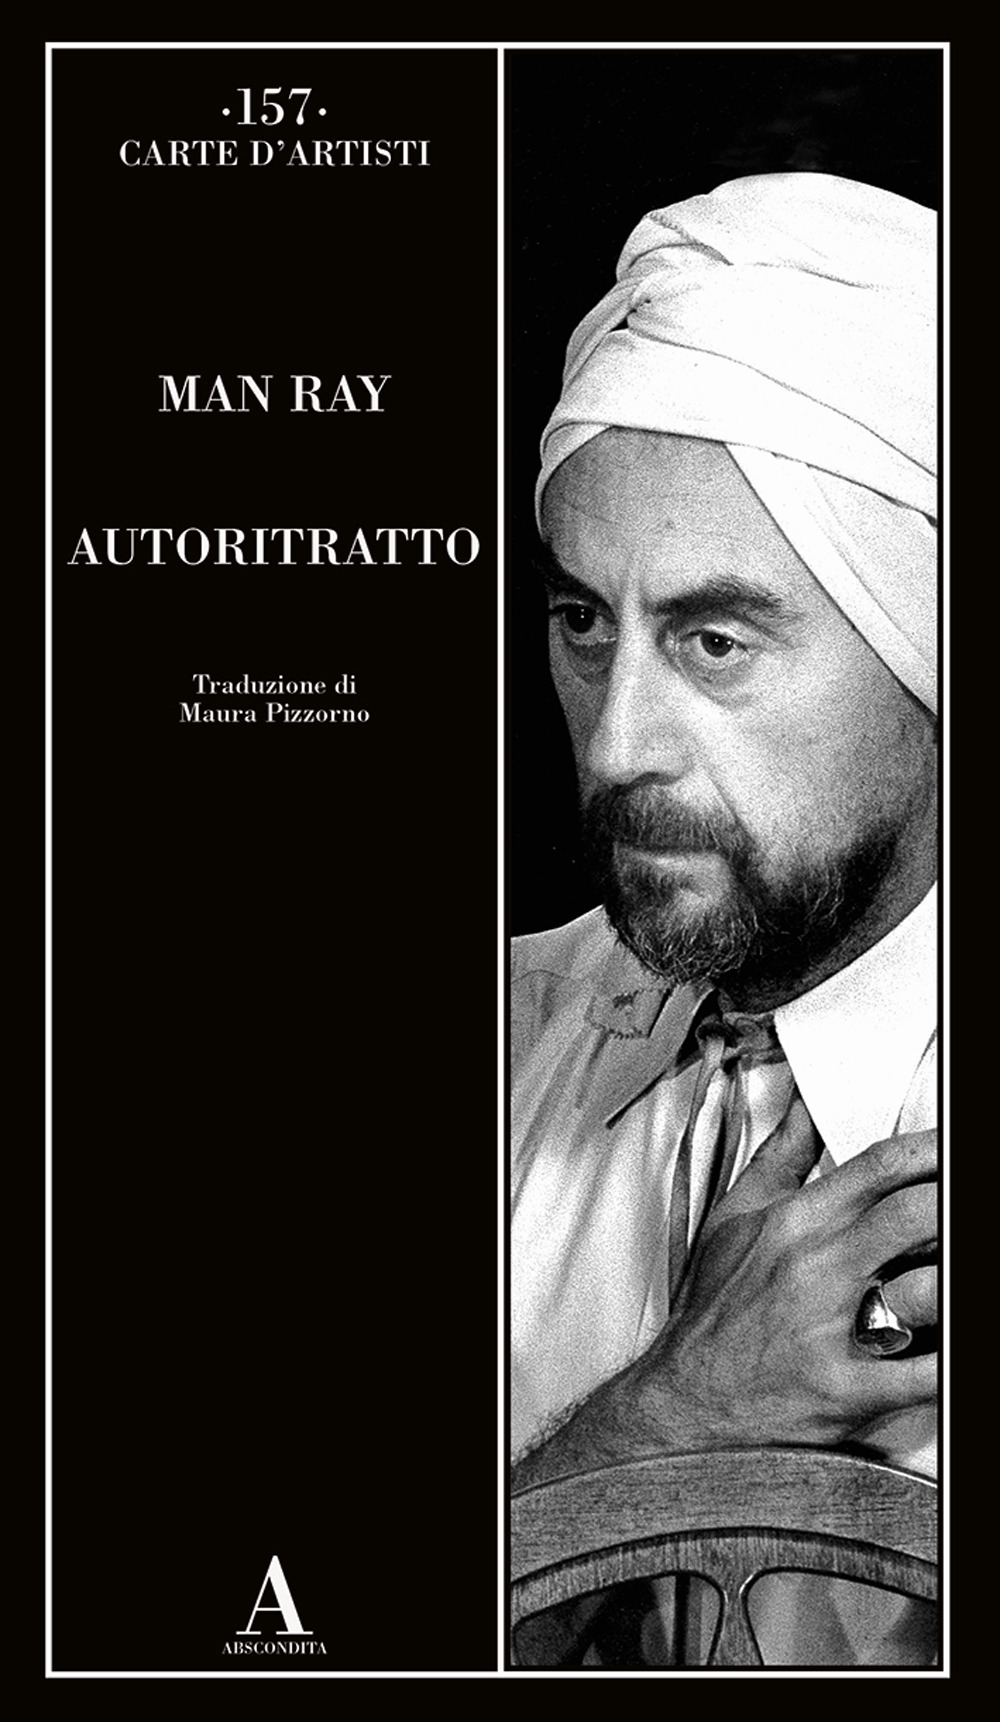 Libri Man Ray - Autoritratto NUOVO SIGILLATO, EDIZIONE DEL 26/04/2022 PROSSIMA USCITA DISPO ALLA DATA DI USCITA, SU PRENOTAZIONE